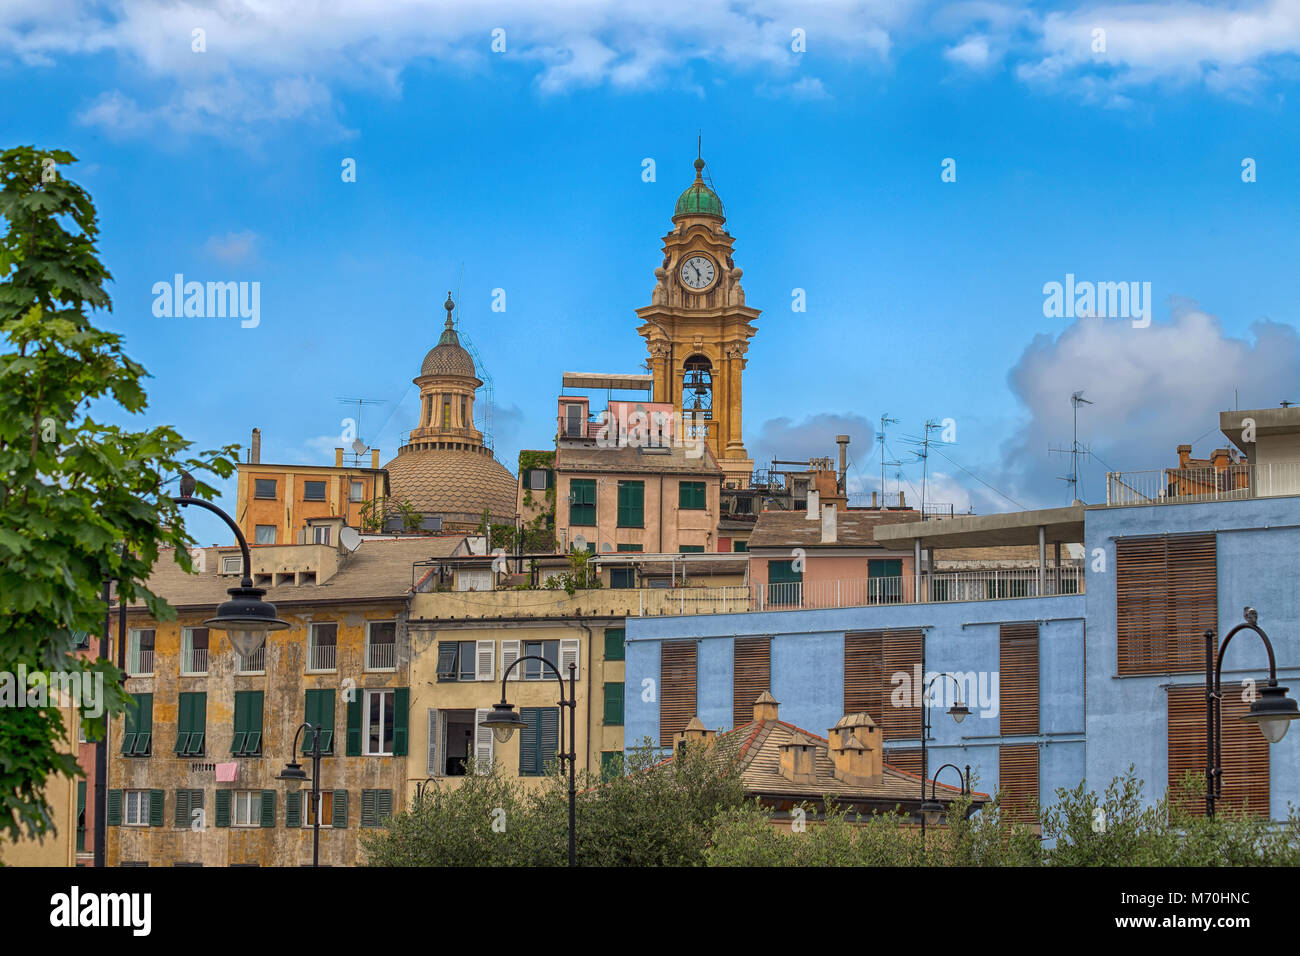 La chiesa e gli edifici del centro storico di Genova, Italia Foto Stock